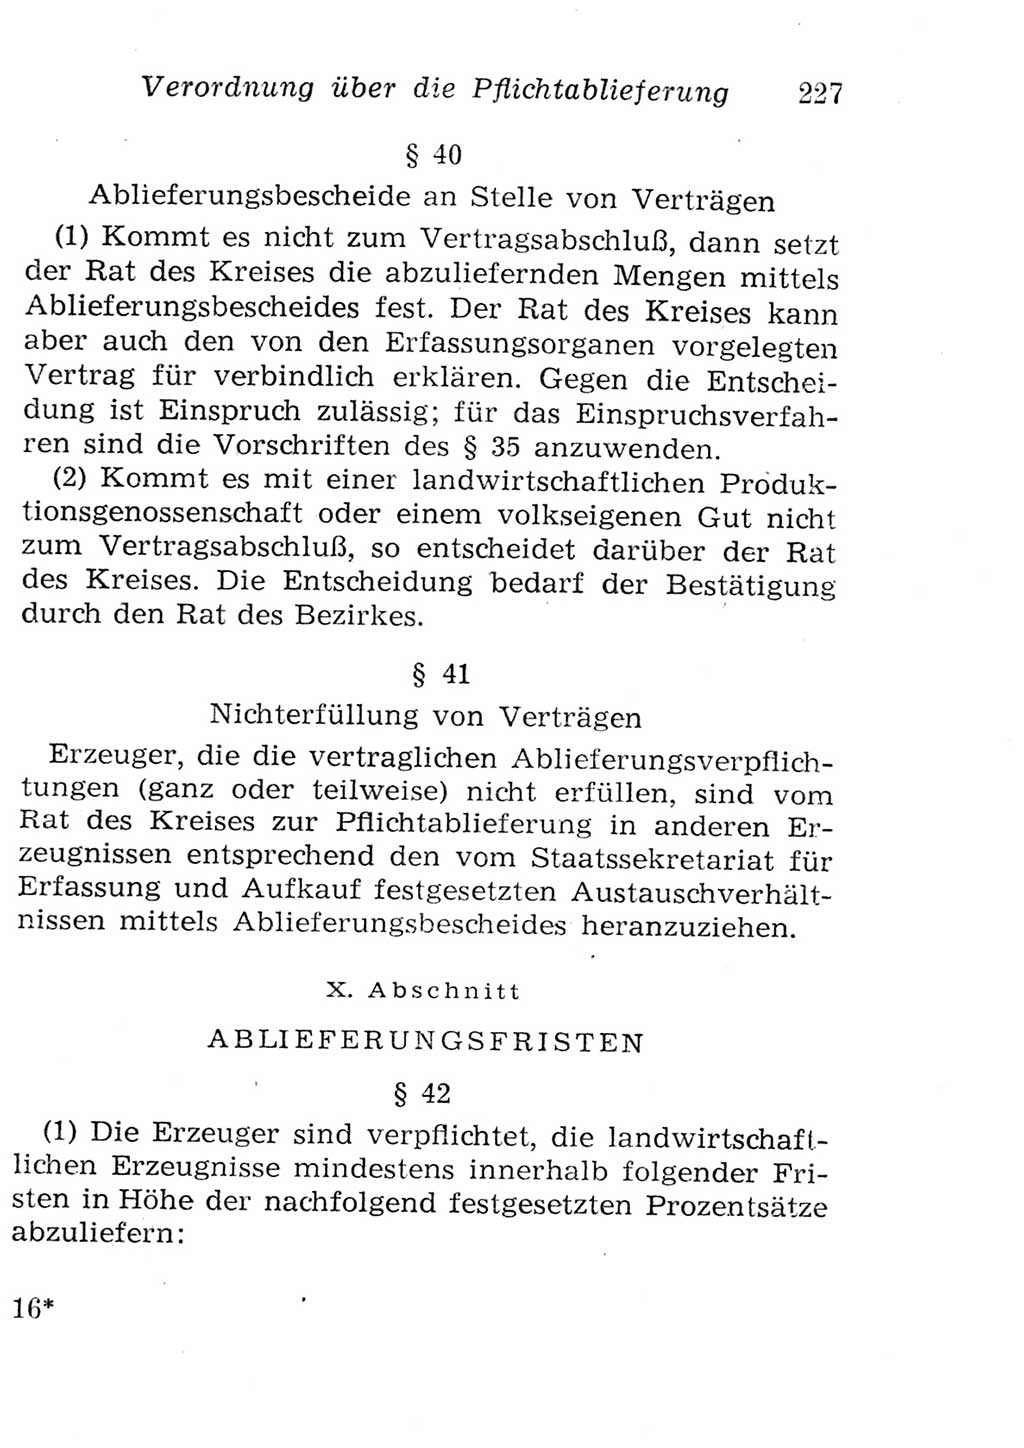 Strafgesetzbuch (StGB) und andere Strafgesetze [Deutsche Demokratische Republik (DDR)] 1957, Seite 227 (StGB Strafges. DDR 1957, S. 227)